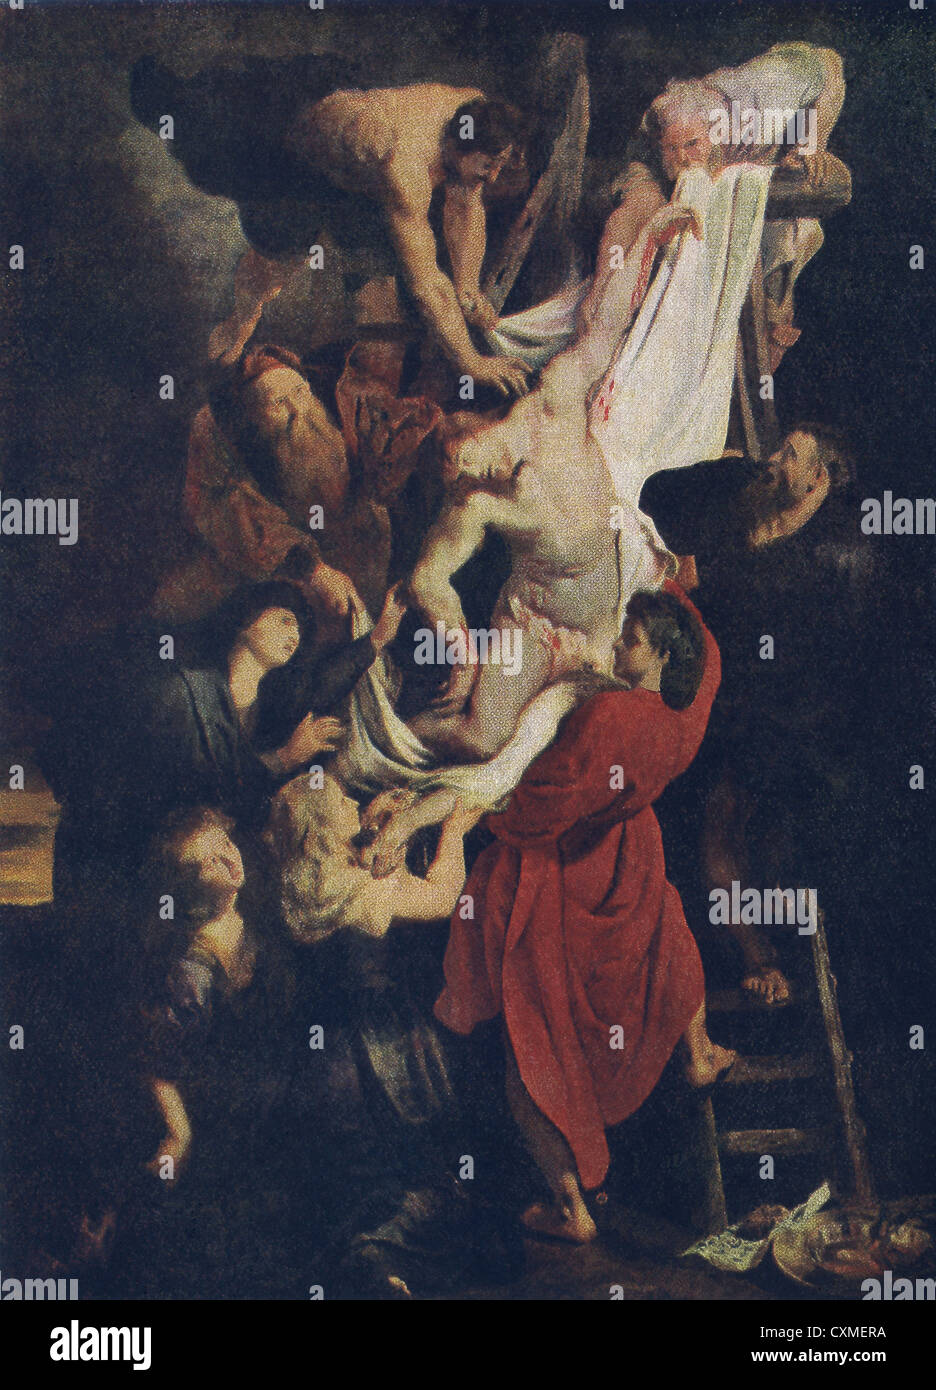 Ce tableau, intitulé Descente de croix est par l'artiste baroque flamand Peter Paul Rubens dans son humeur la plus réaliste. Banque D'Images